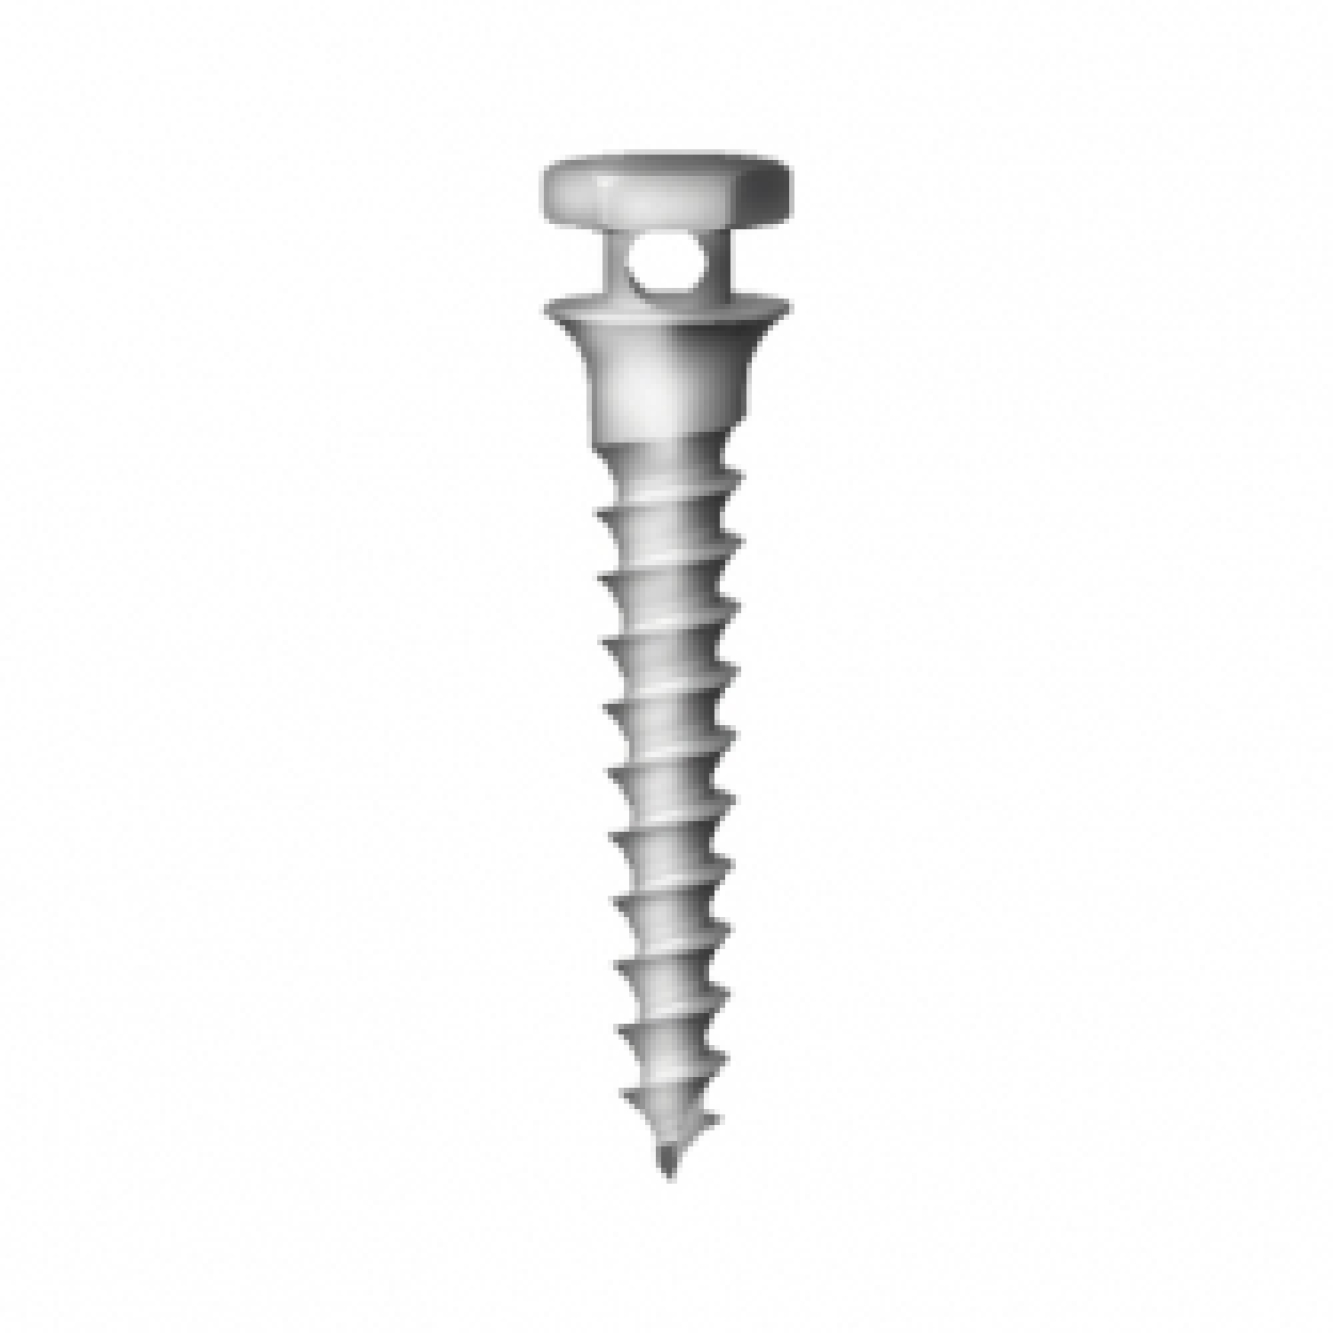 OS-S-20-008 Стоматологический ортодонтический винт для эластичной тяги и проволоки, диаметр 1.8 мм, длина 8 мм, Mr.Curette Tech, Южная Корея